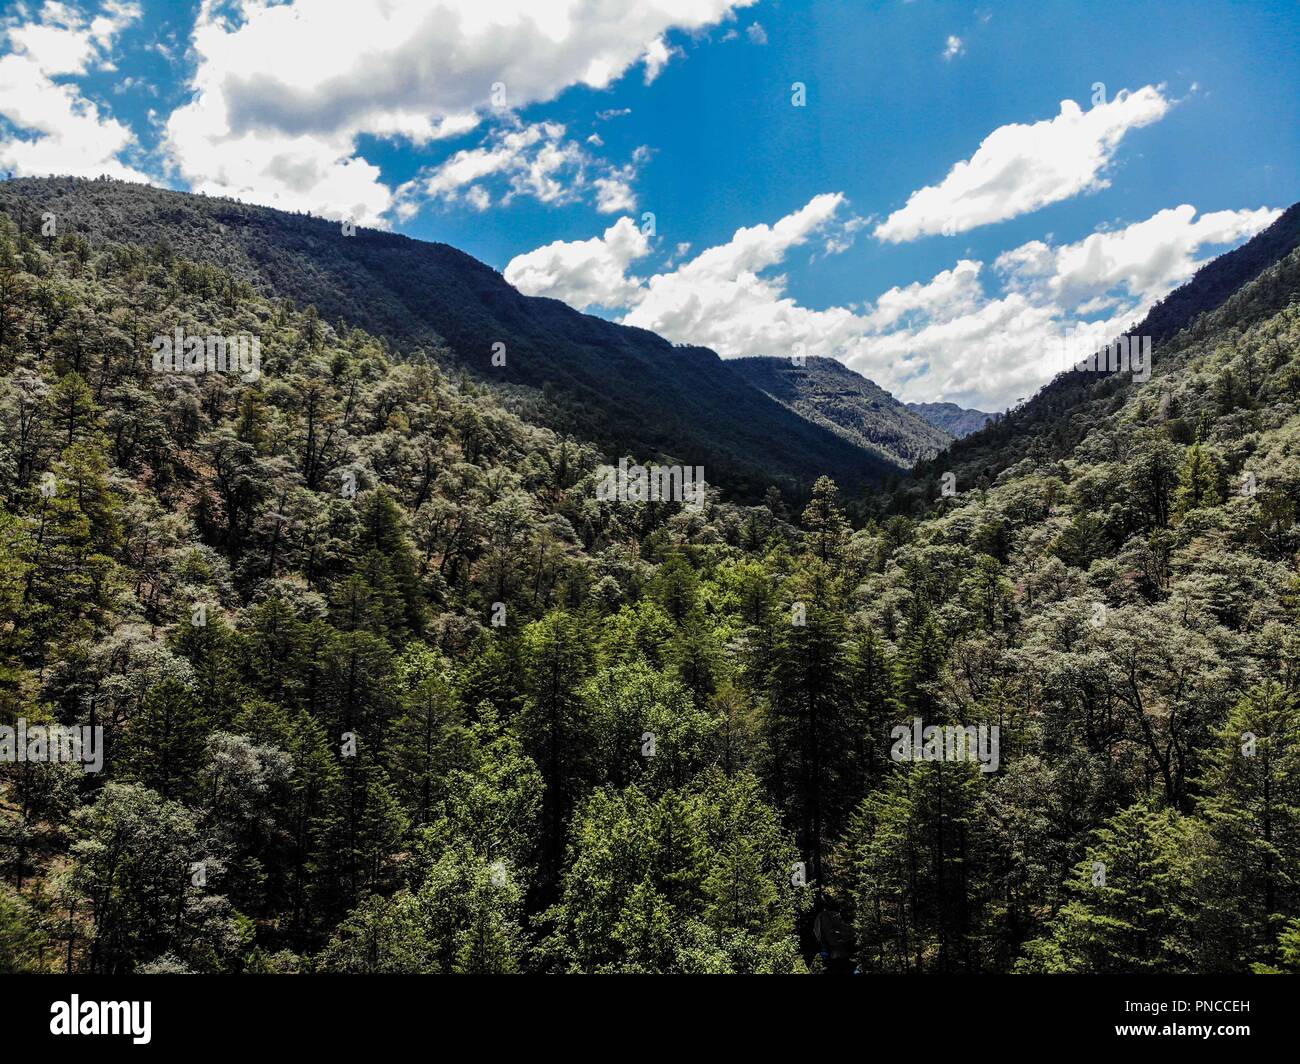 Vista aerea de paisaje rural y campamento Expedición Discovery Madrense  en el medio del bosque. rancho La Presita en La Mesa Tres Rios, Sonora Mexico Stock Photo